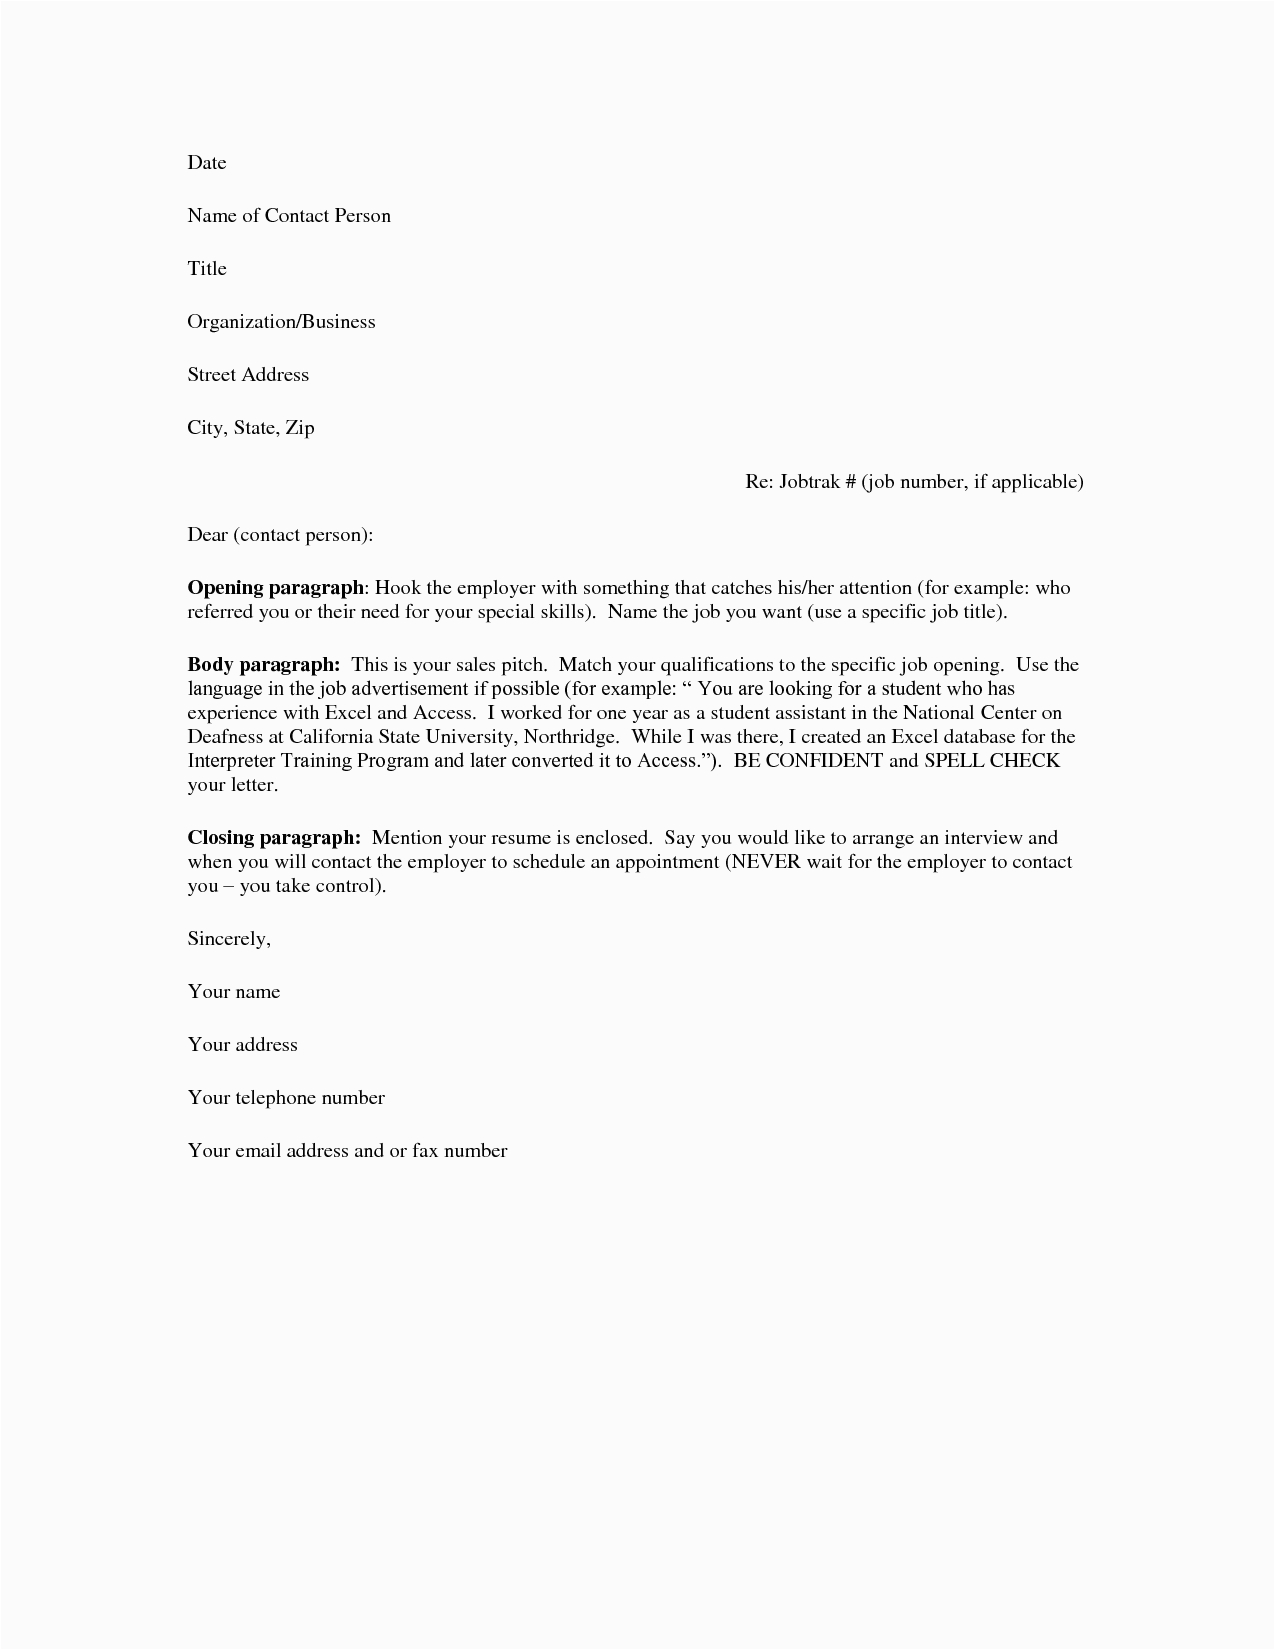 Sample Resume Cover Letter for Job Basic Cover Letter for A Resume